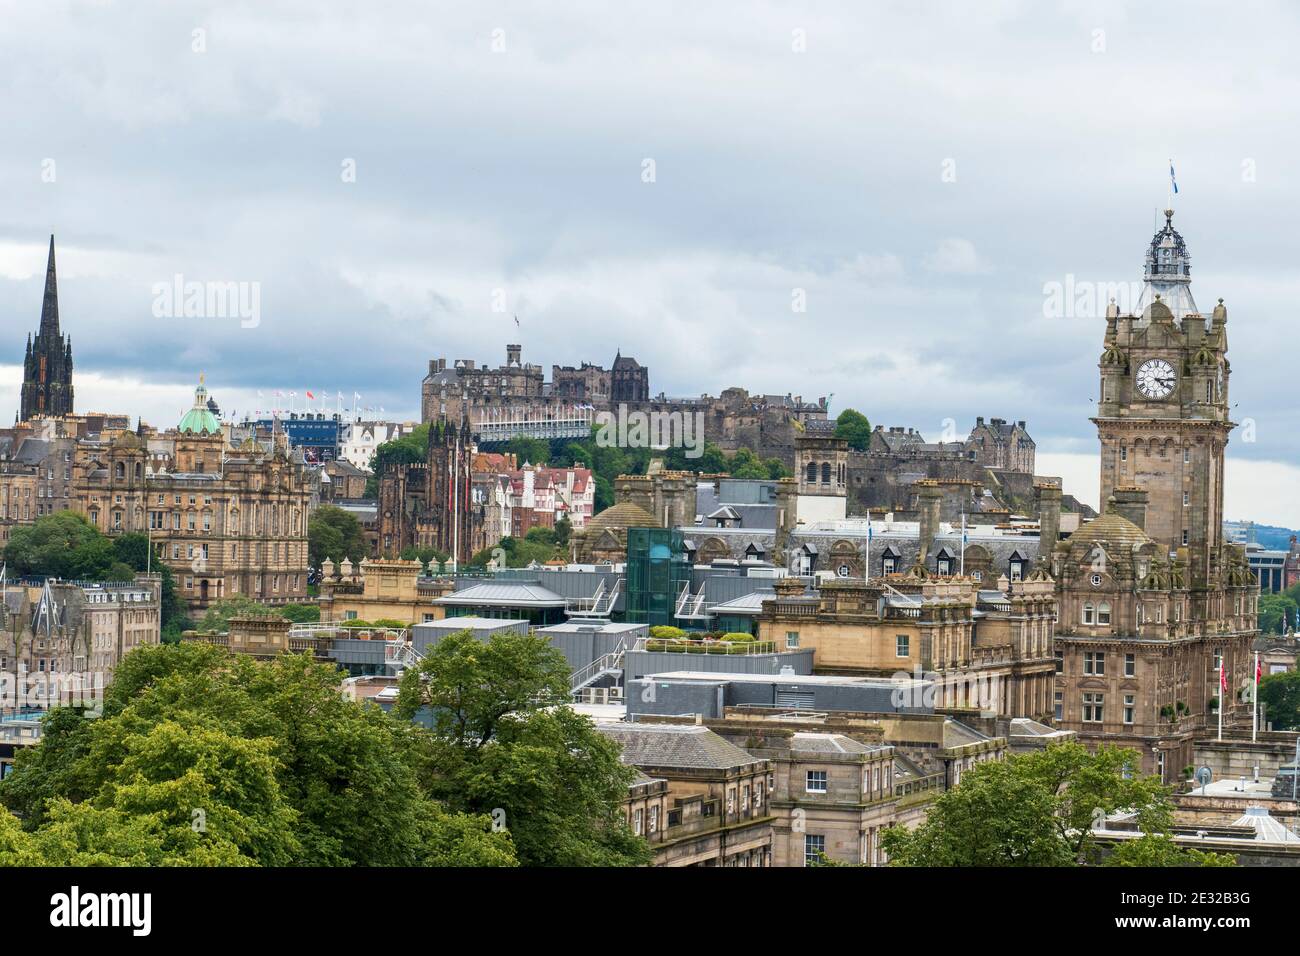 Blick über die Altstadt von Edinburgh mit Schloß, historischem Balmoral Hotel und Tolbooth Kirche Stock Photo